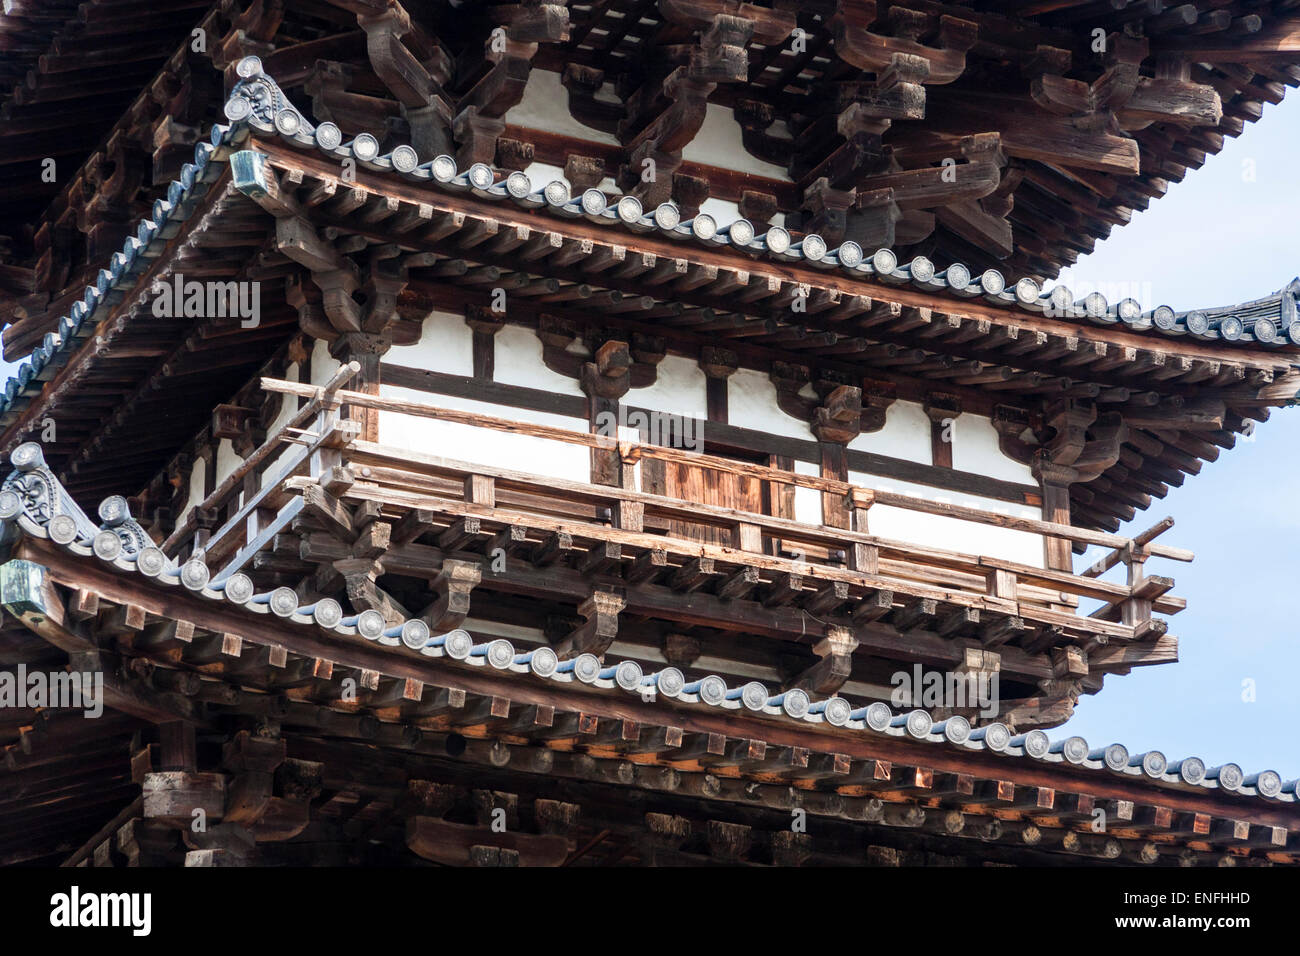 Giappone, Nara, tempio di Yakushiji. La pagoda orientale, Toto, risalente al XII secolo del periodo Hakuho. Primo piano dettagli architettonici del balcone. Foto Stock